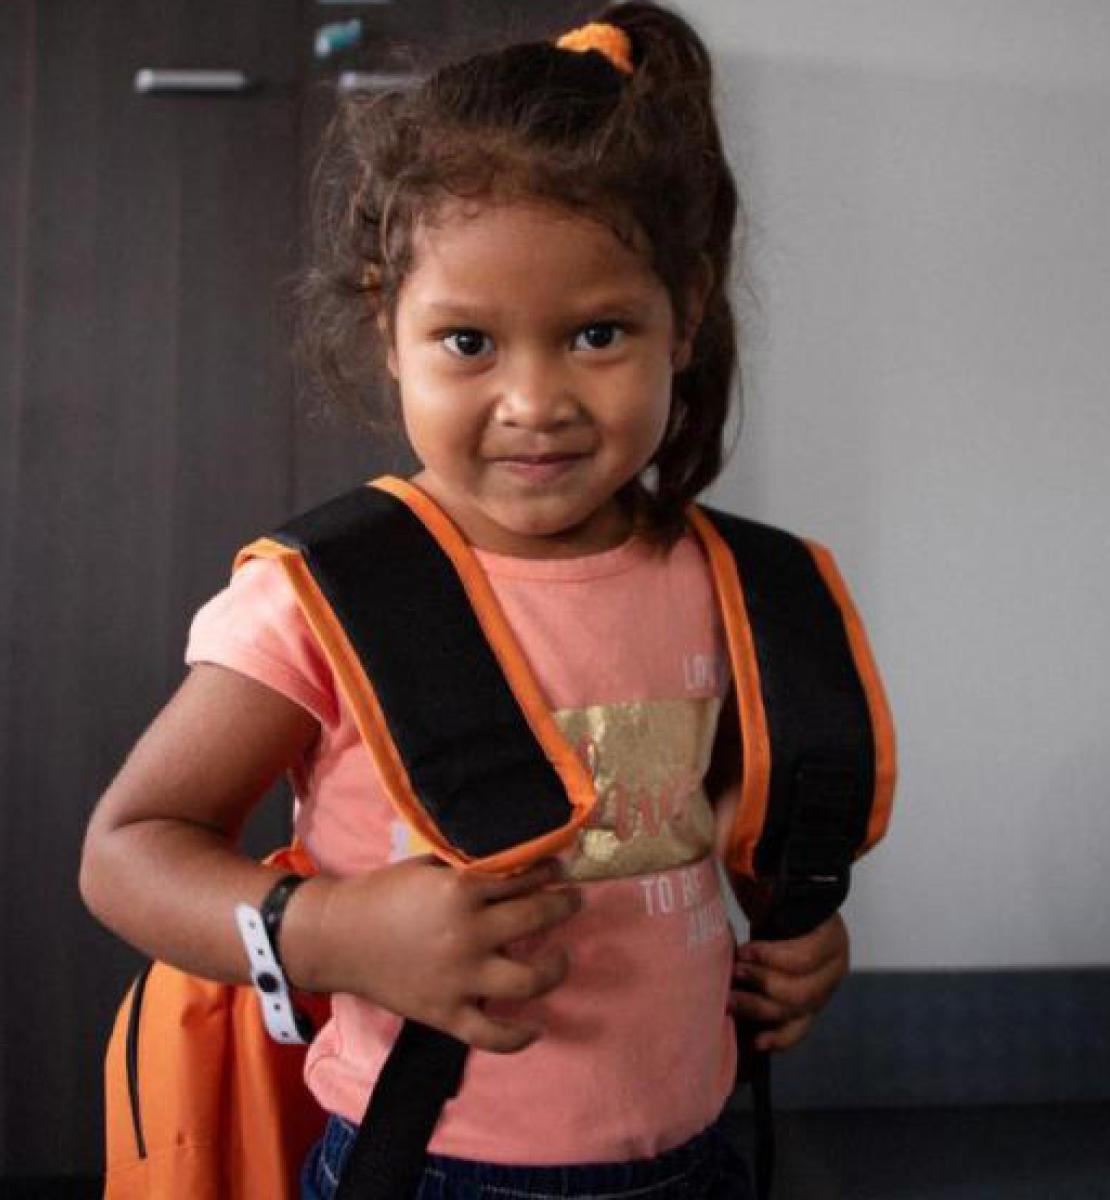 Una niña con una pequeña sonrisa y que mira estoicamente hacia la cámara mientras se agarra a las correas de su mochila.